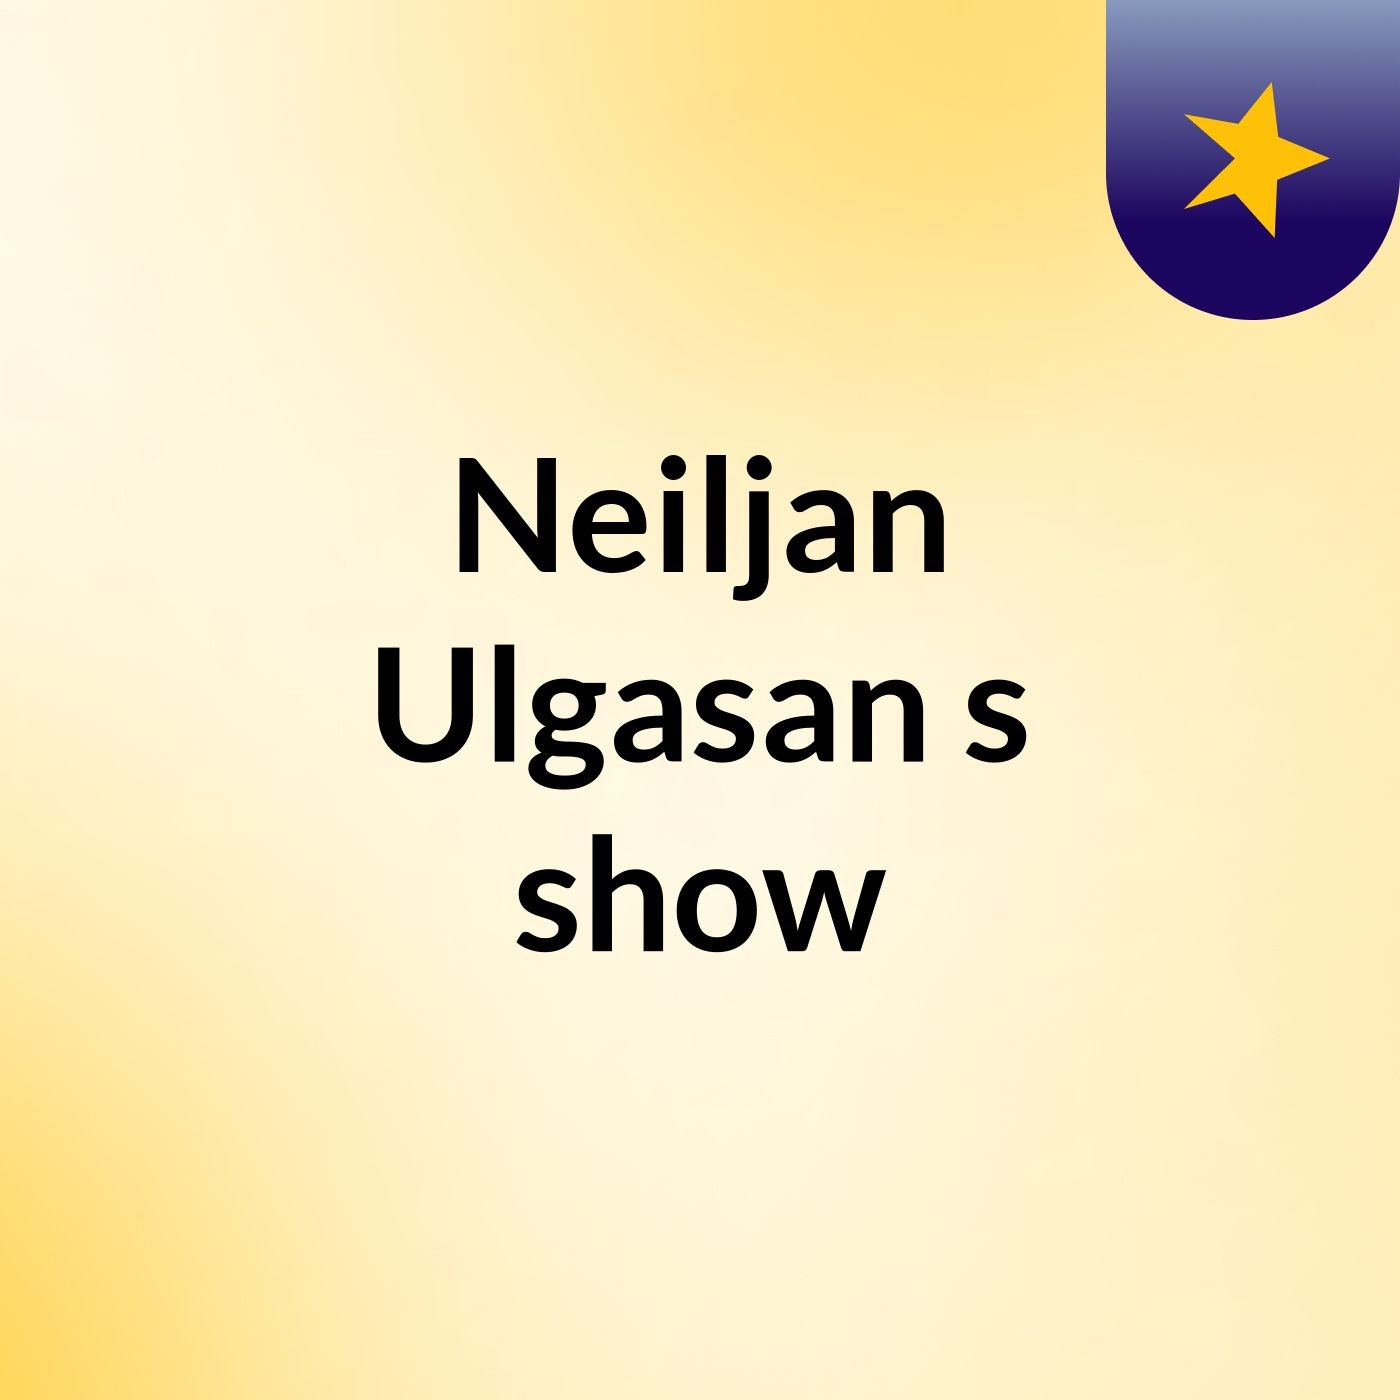 Neiljan Ulgasan's show